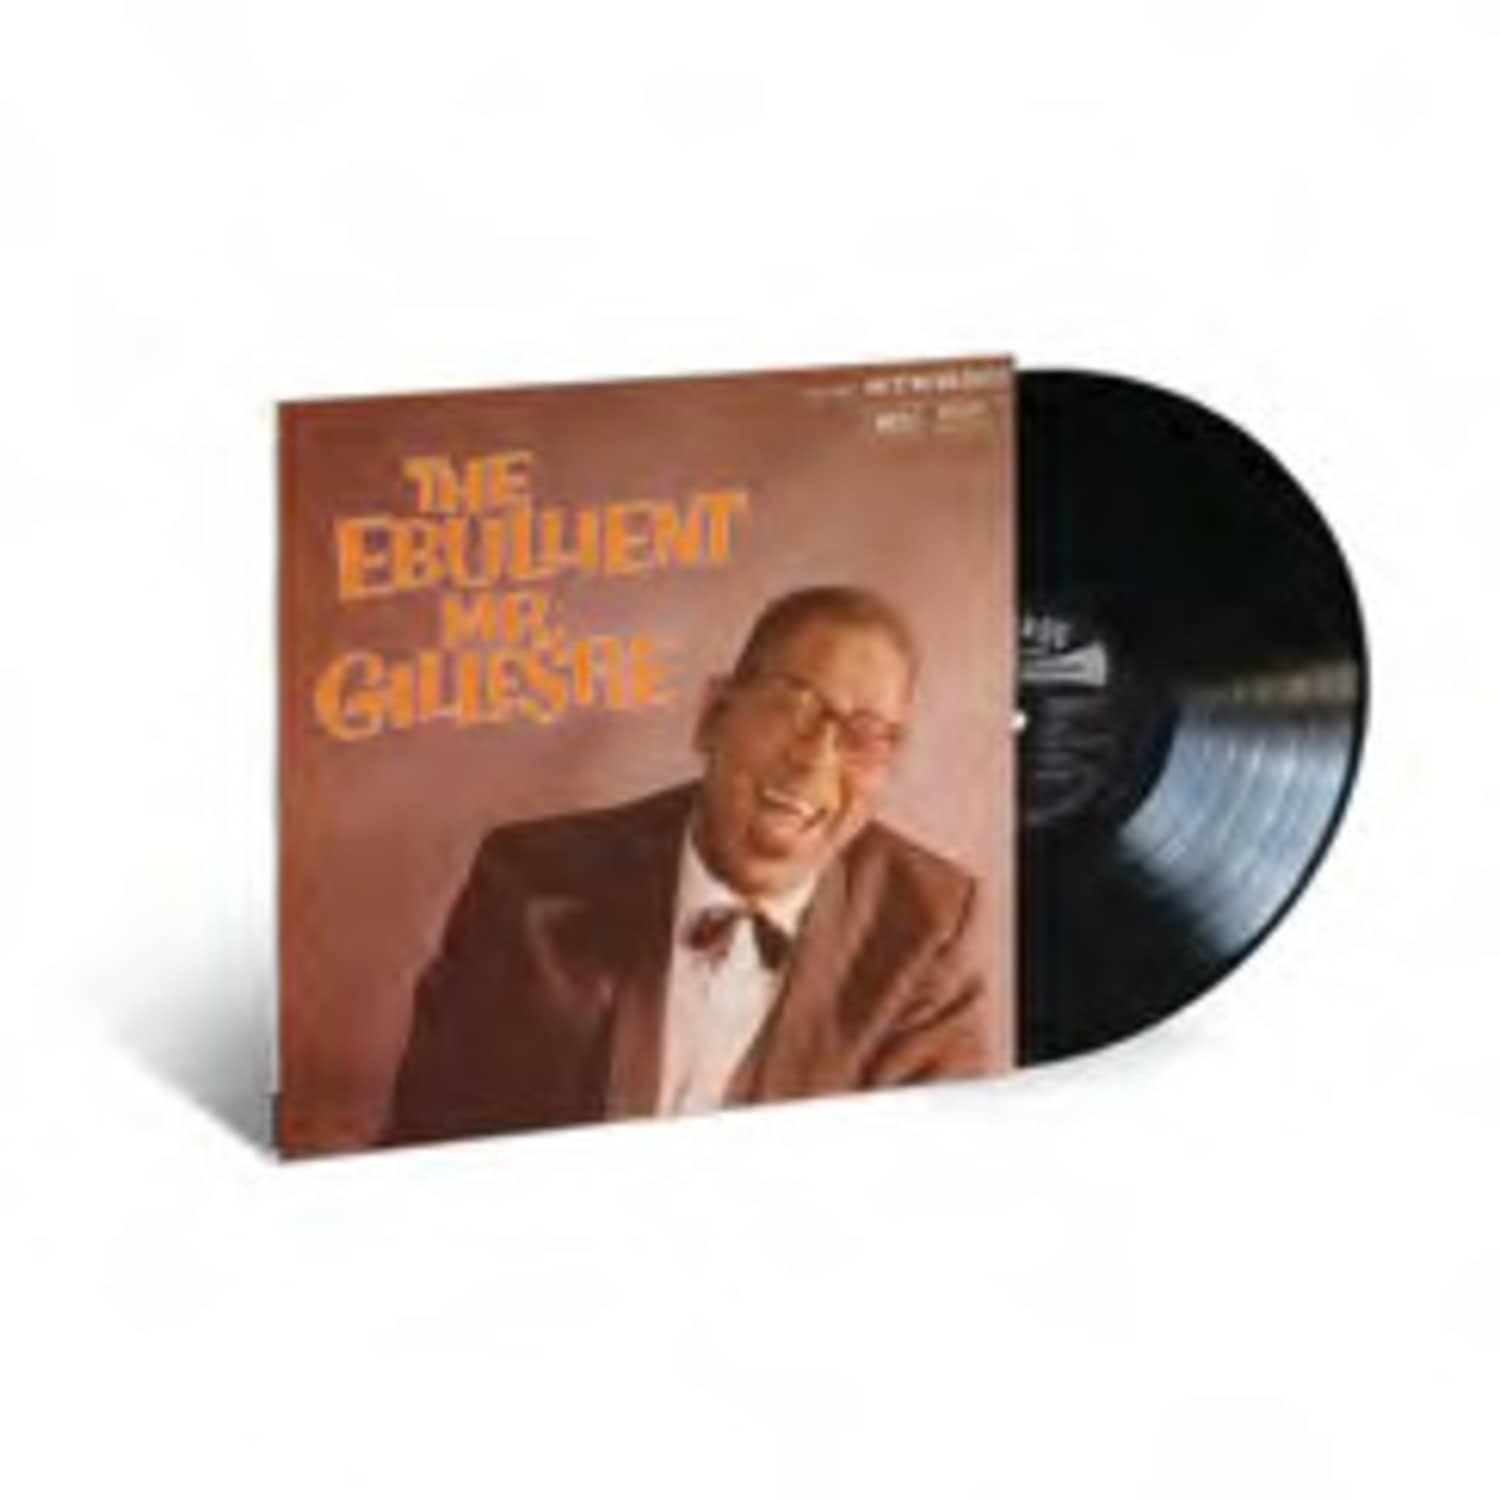 Dizzy Gillespie - THE EBULLIENT MR. GILLESPIE 